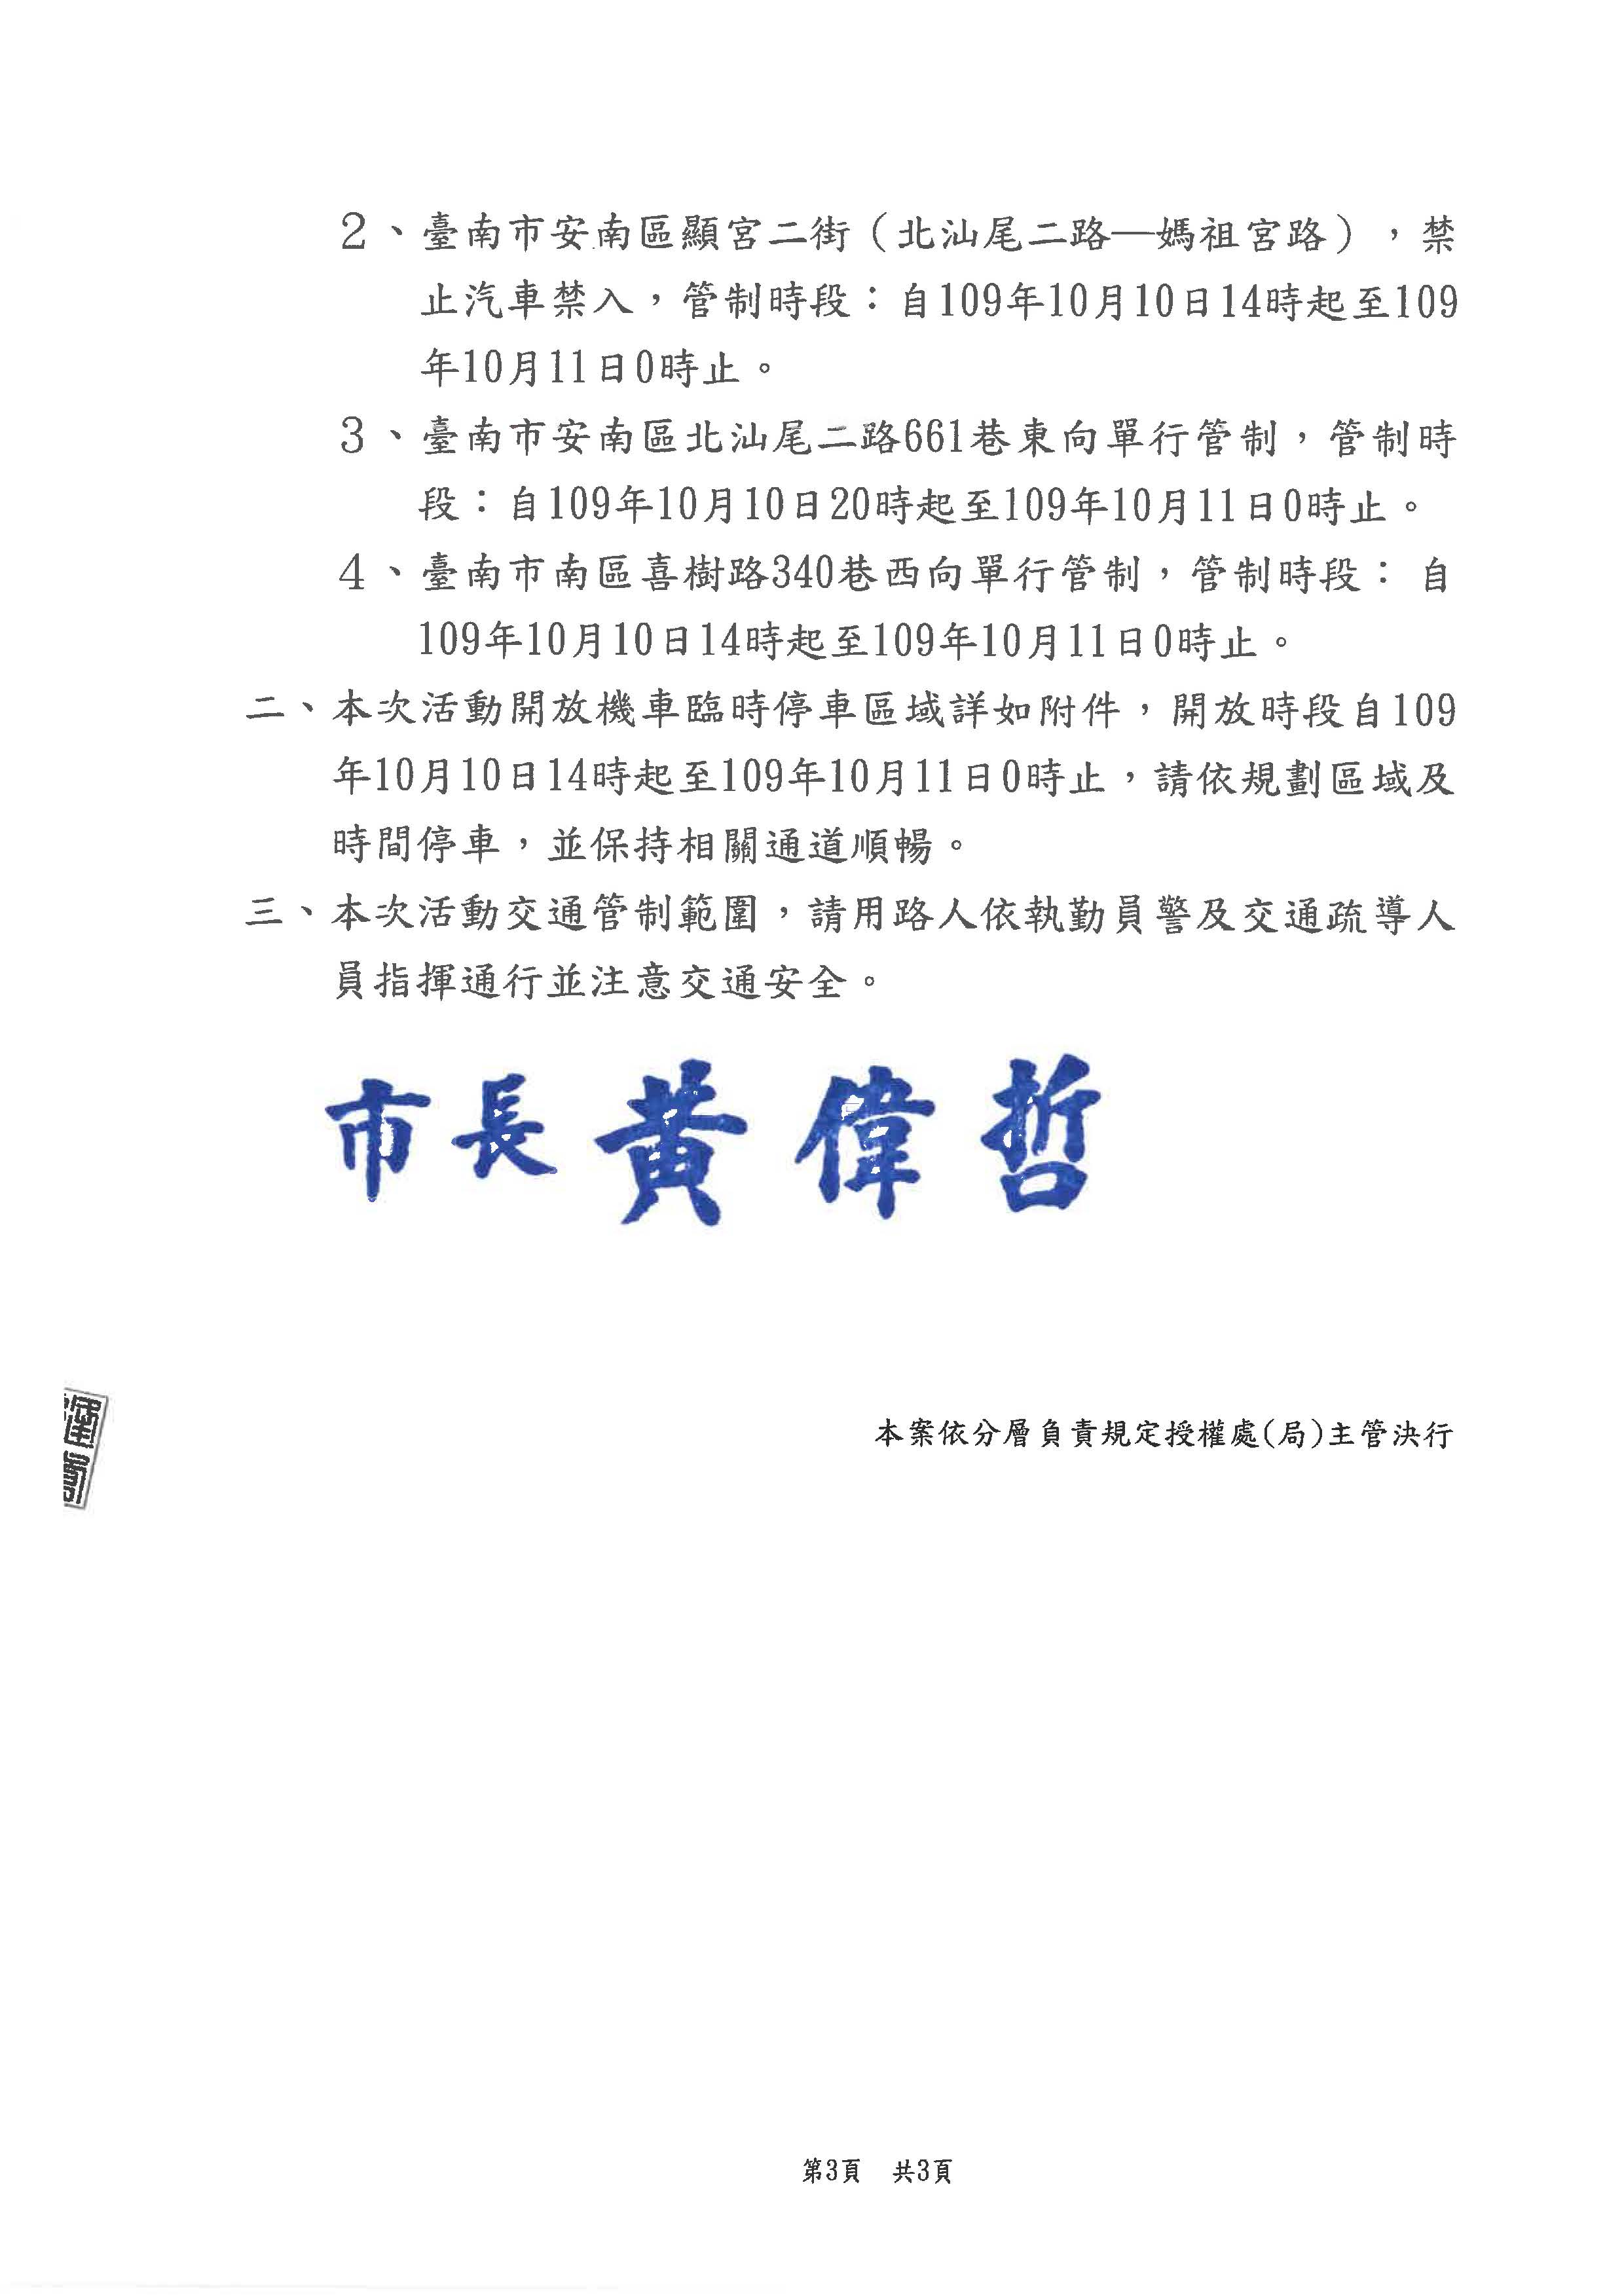 公告「2020國慶焰火在臺南」活動交通管制頁面3